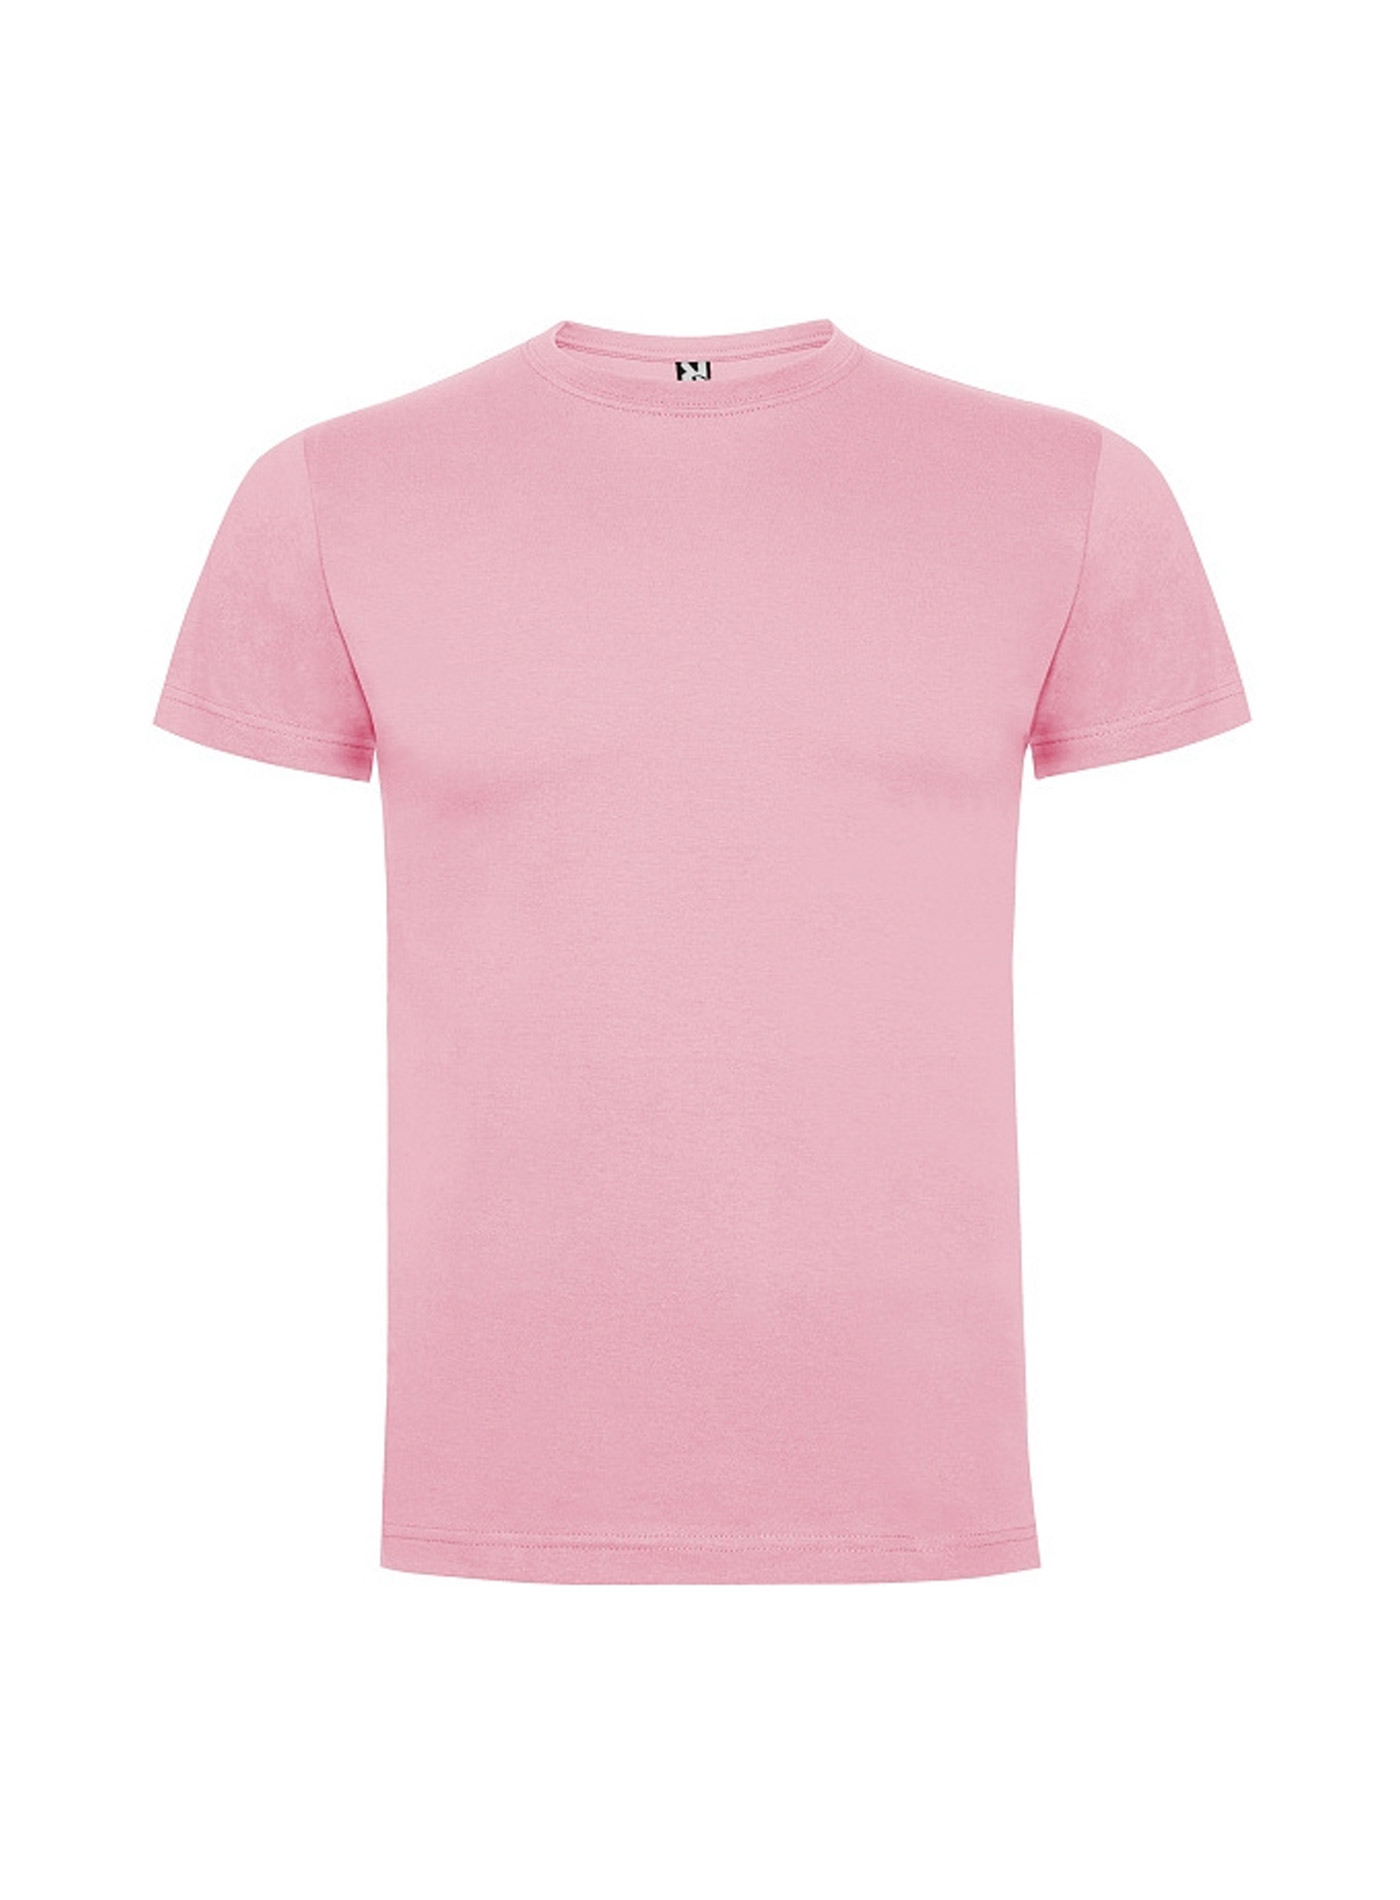 Dětské tričko Roly Dogo premium - Světle růžová 5-6